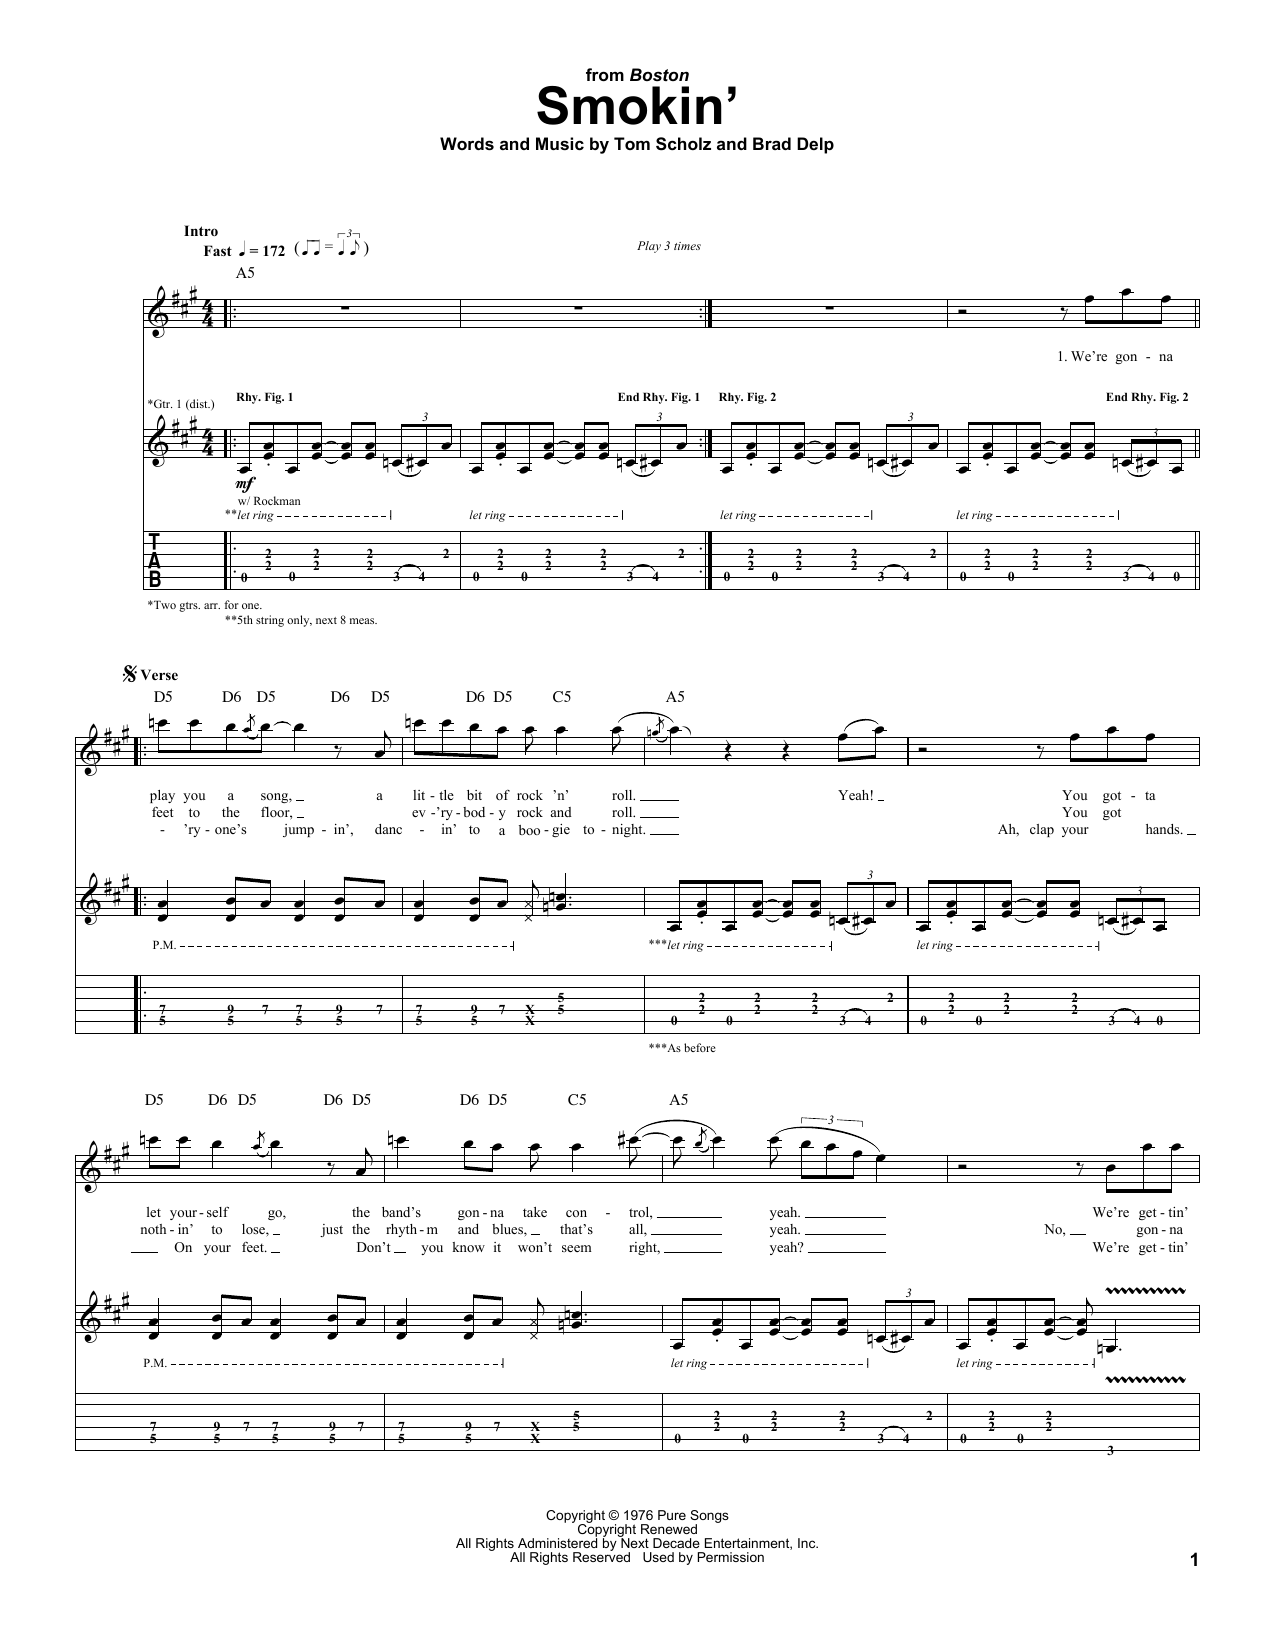 Boston Smokin' Sheet Music Notes & Chords for Guitar Tab - Download or Print PDF